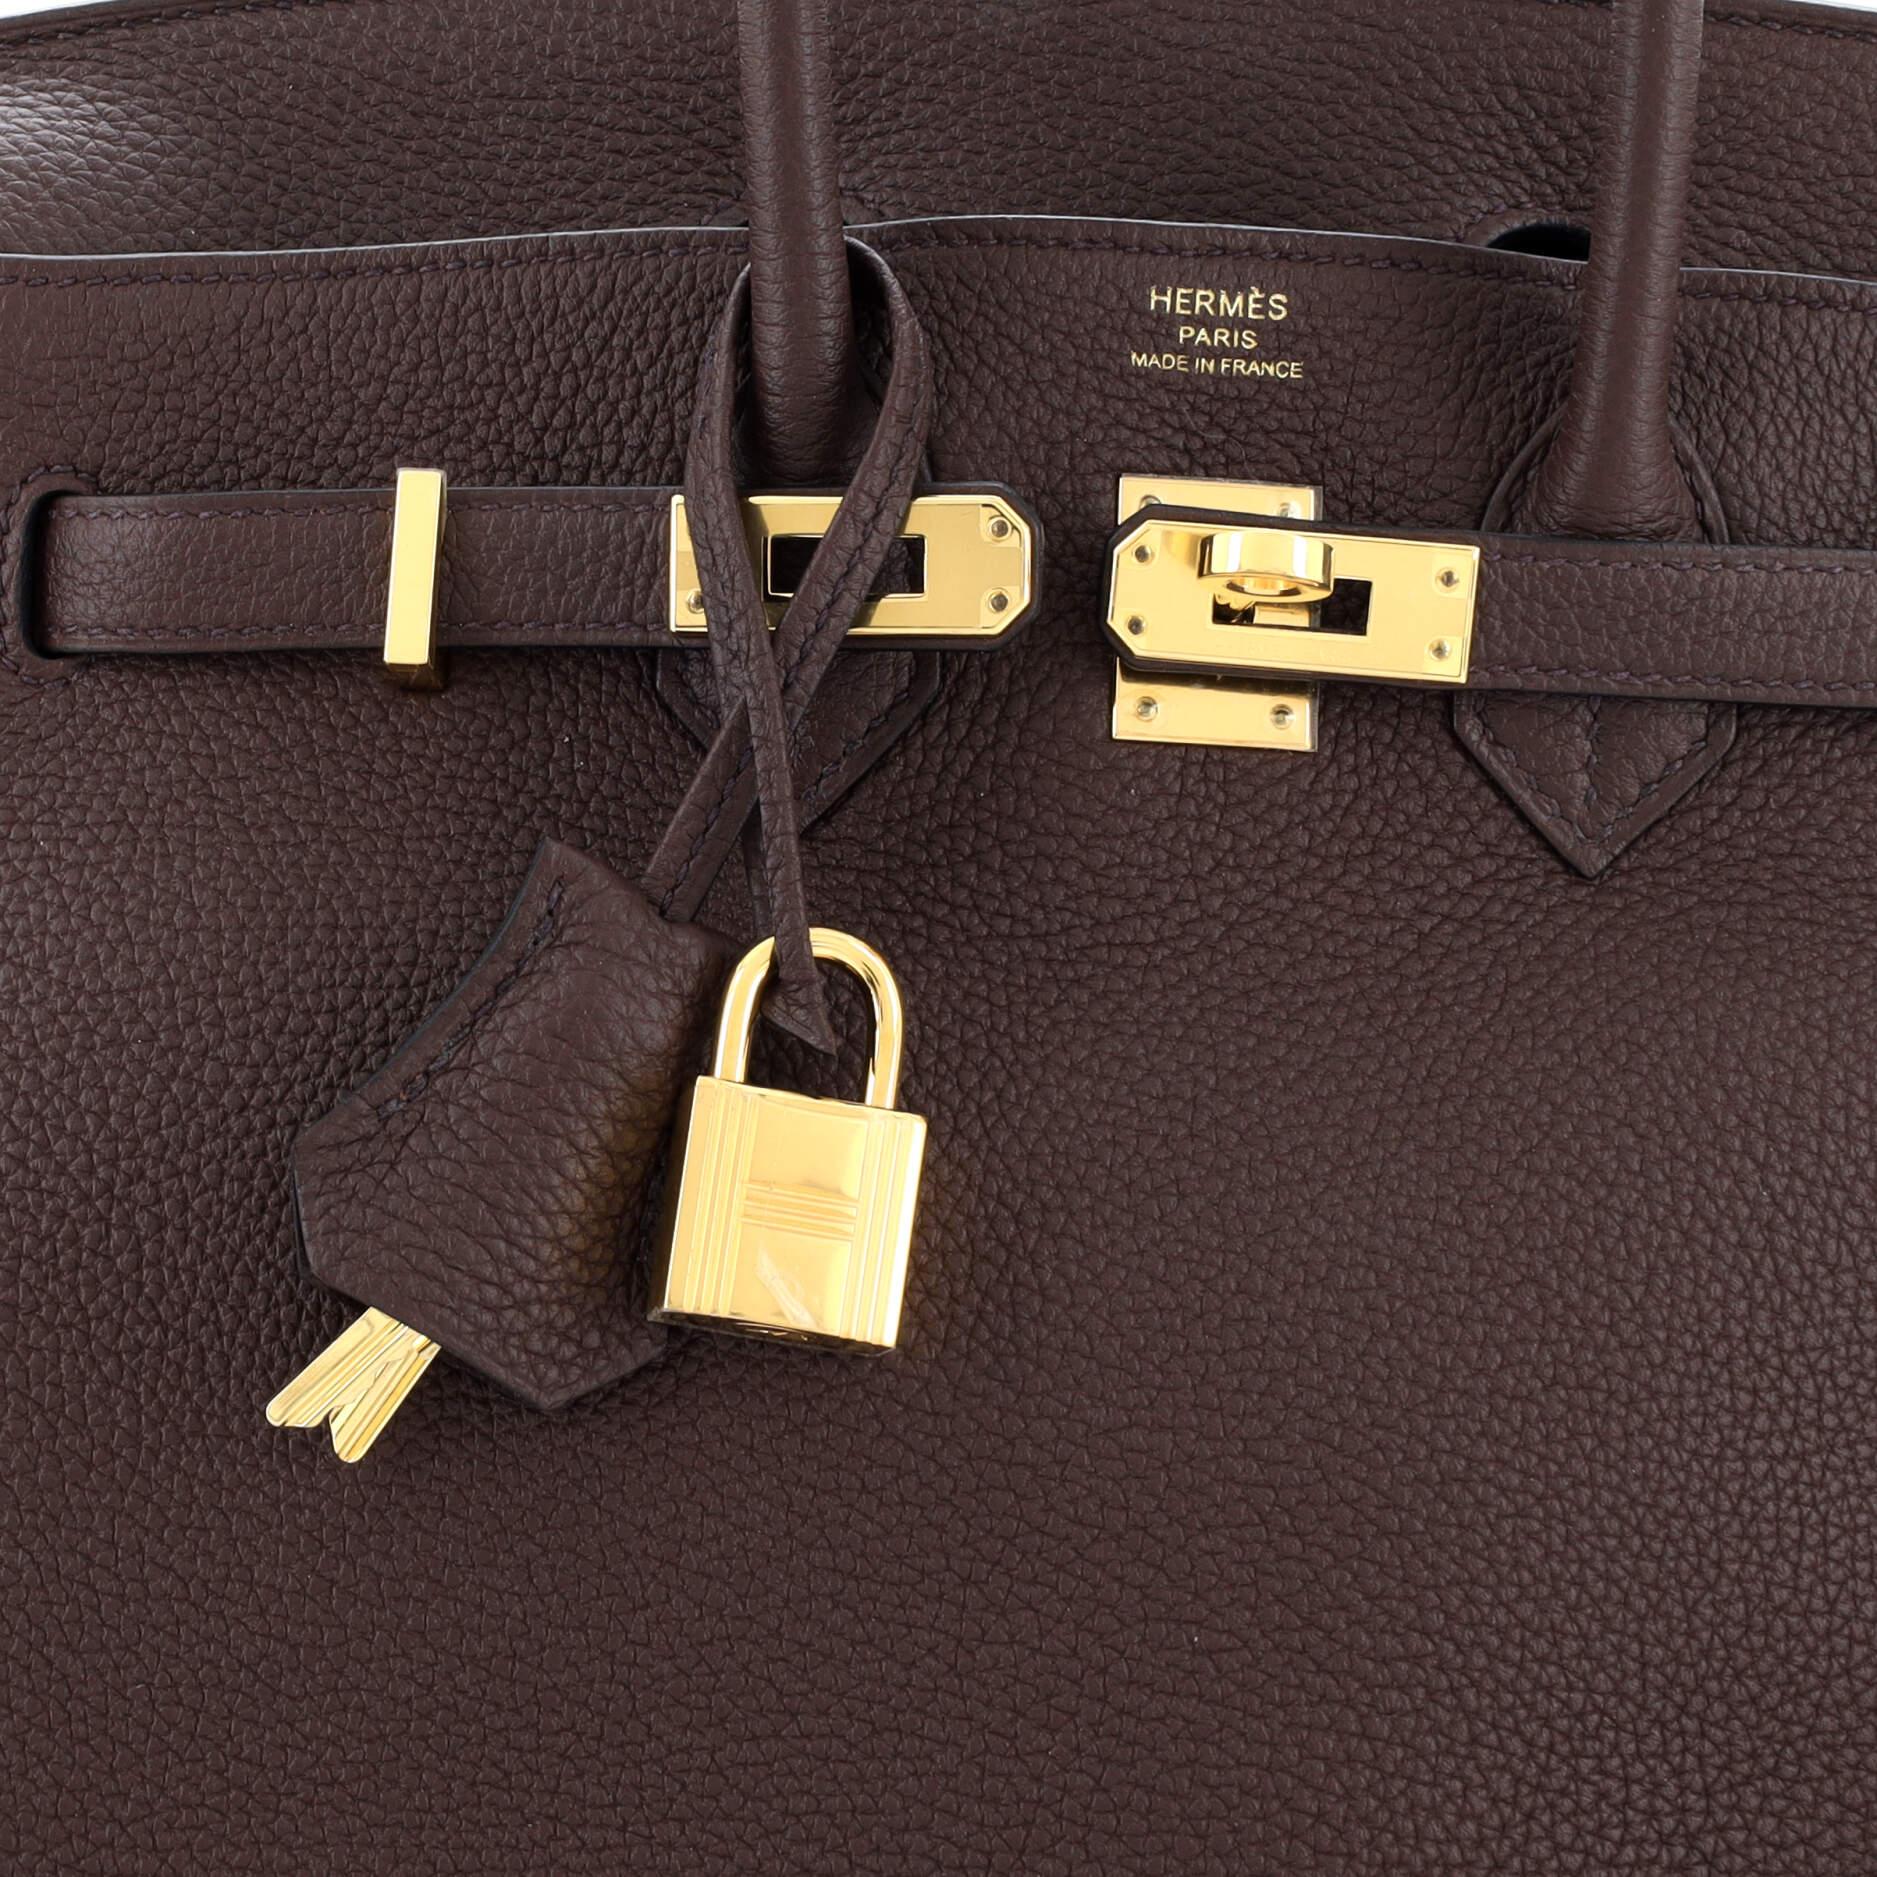 Hermes Birkin Handbag Rouge Sellier Togo with Gold Hardware 25 3